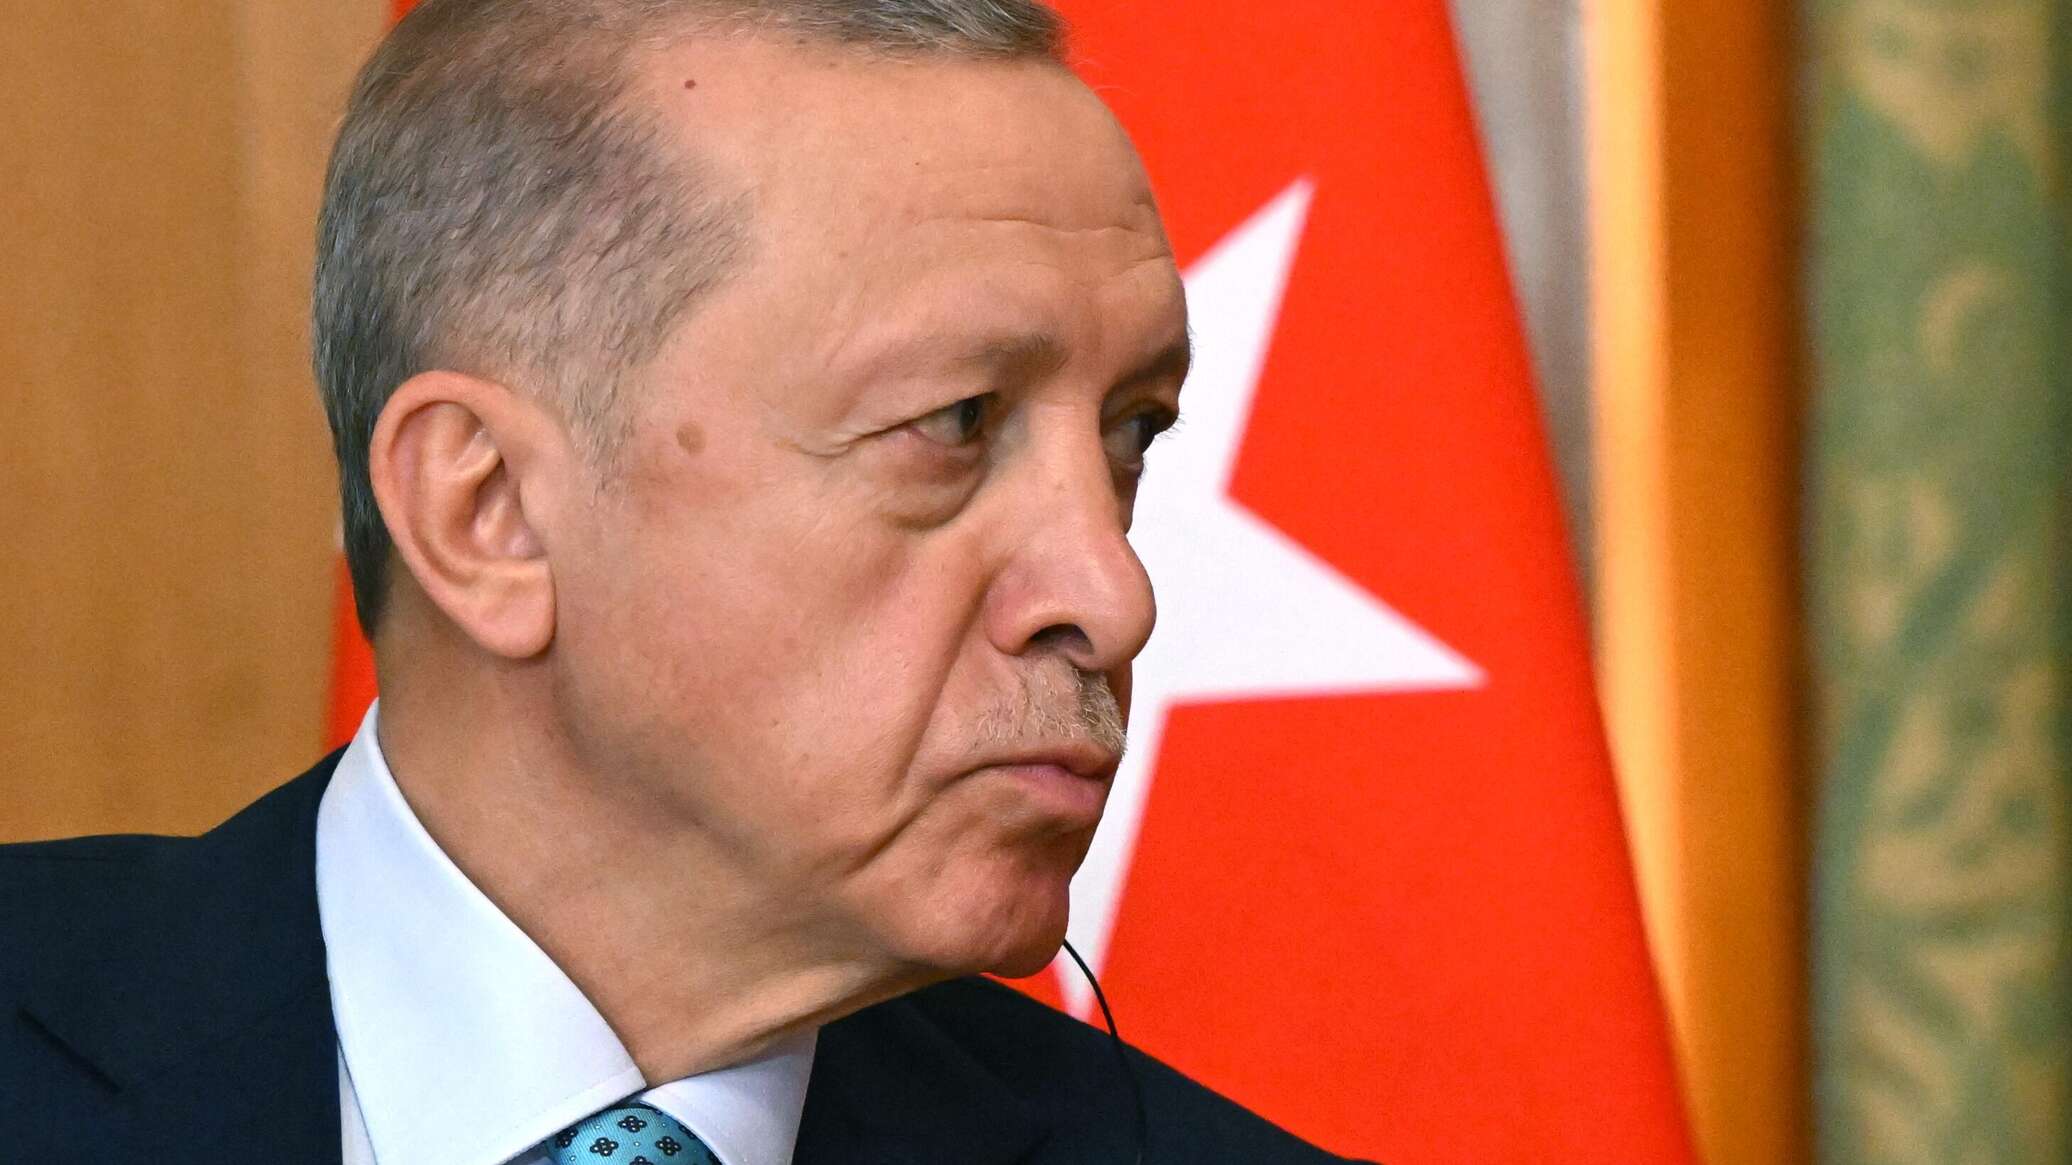 أردوغان: تركيا تستعد لإعلان إسرائيل "مجرمة حرب"